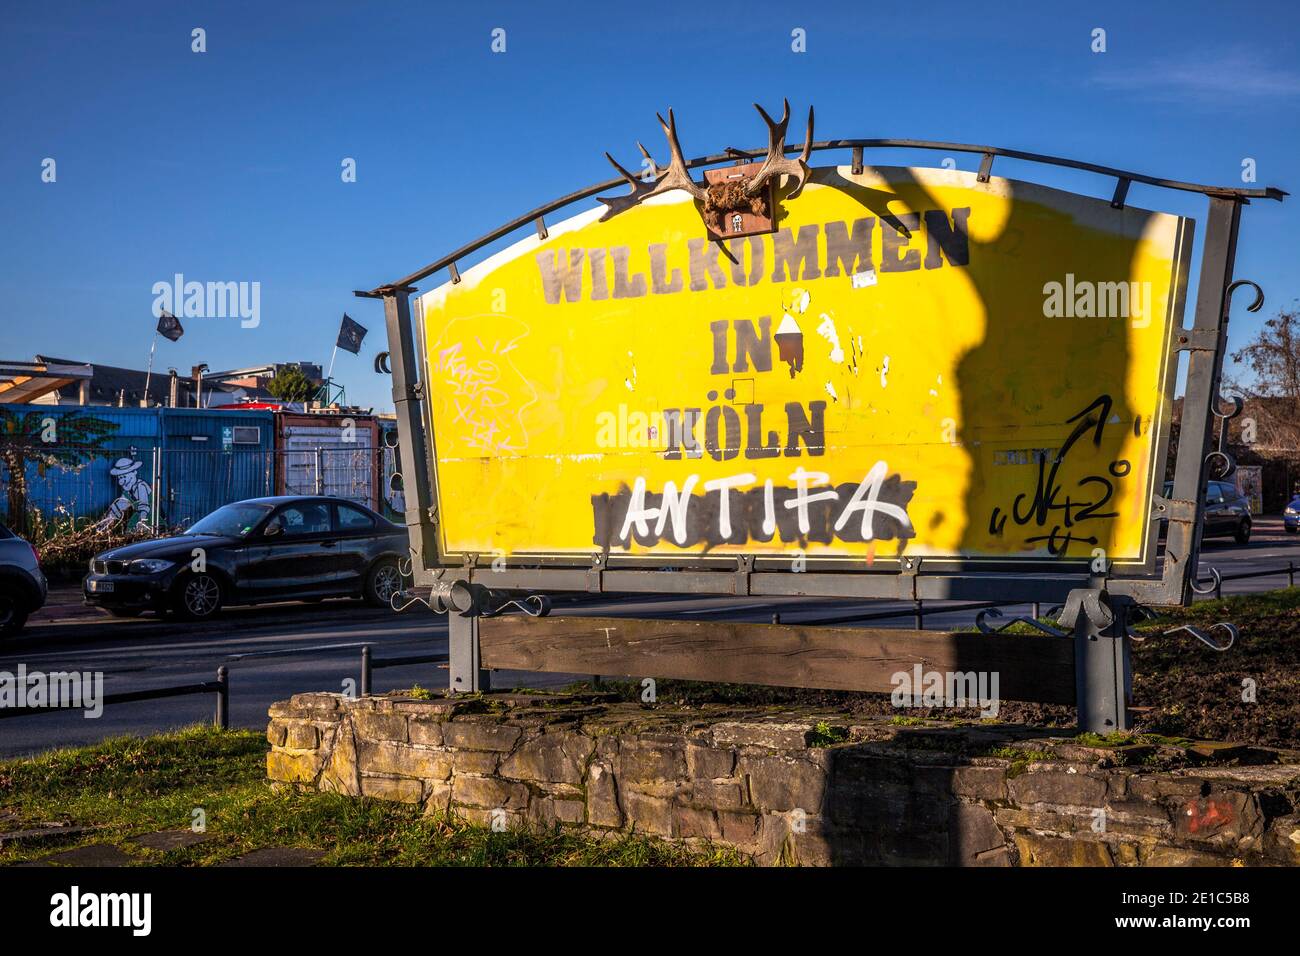 Il segno di un ex locanda è stato trasformato in un segno di ingresso della città unusal con antlers, traduzione: Benvenuti a Colonia, Alteburger Strasse, Colonia, Foto Stock